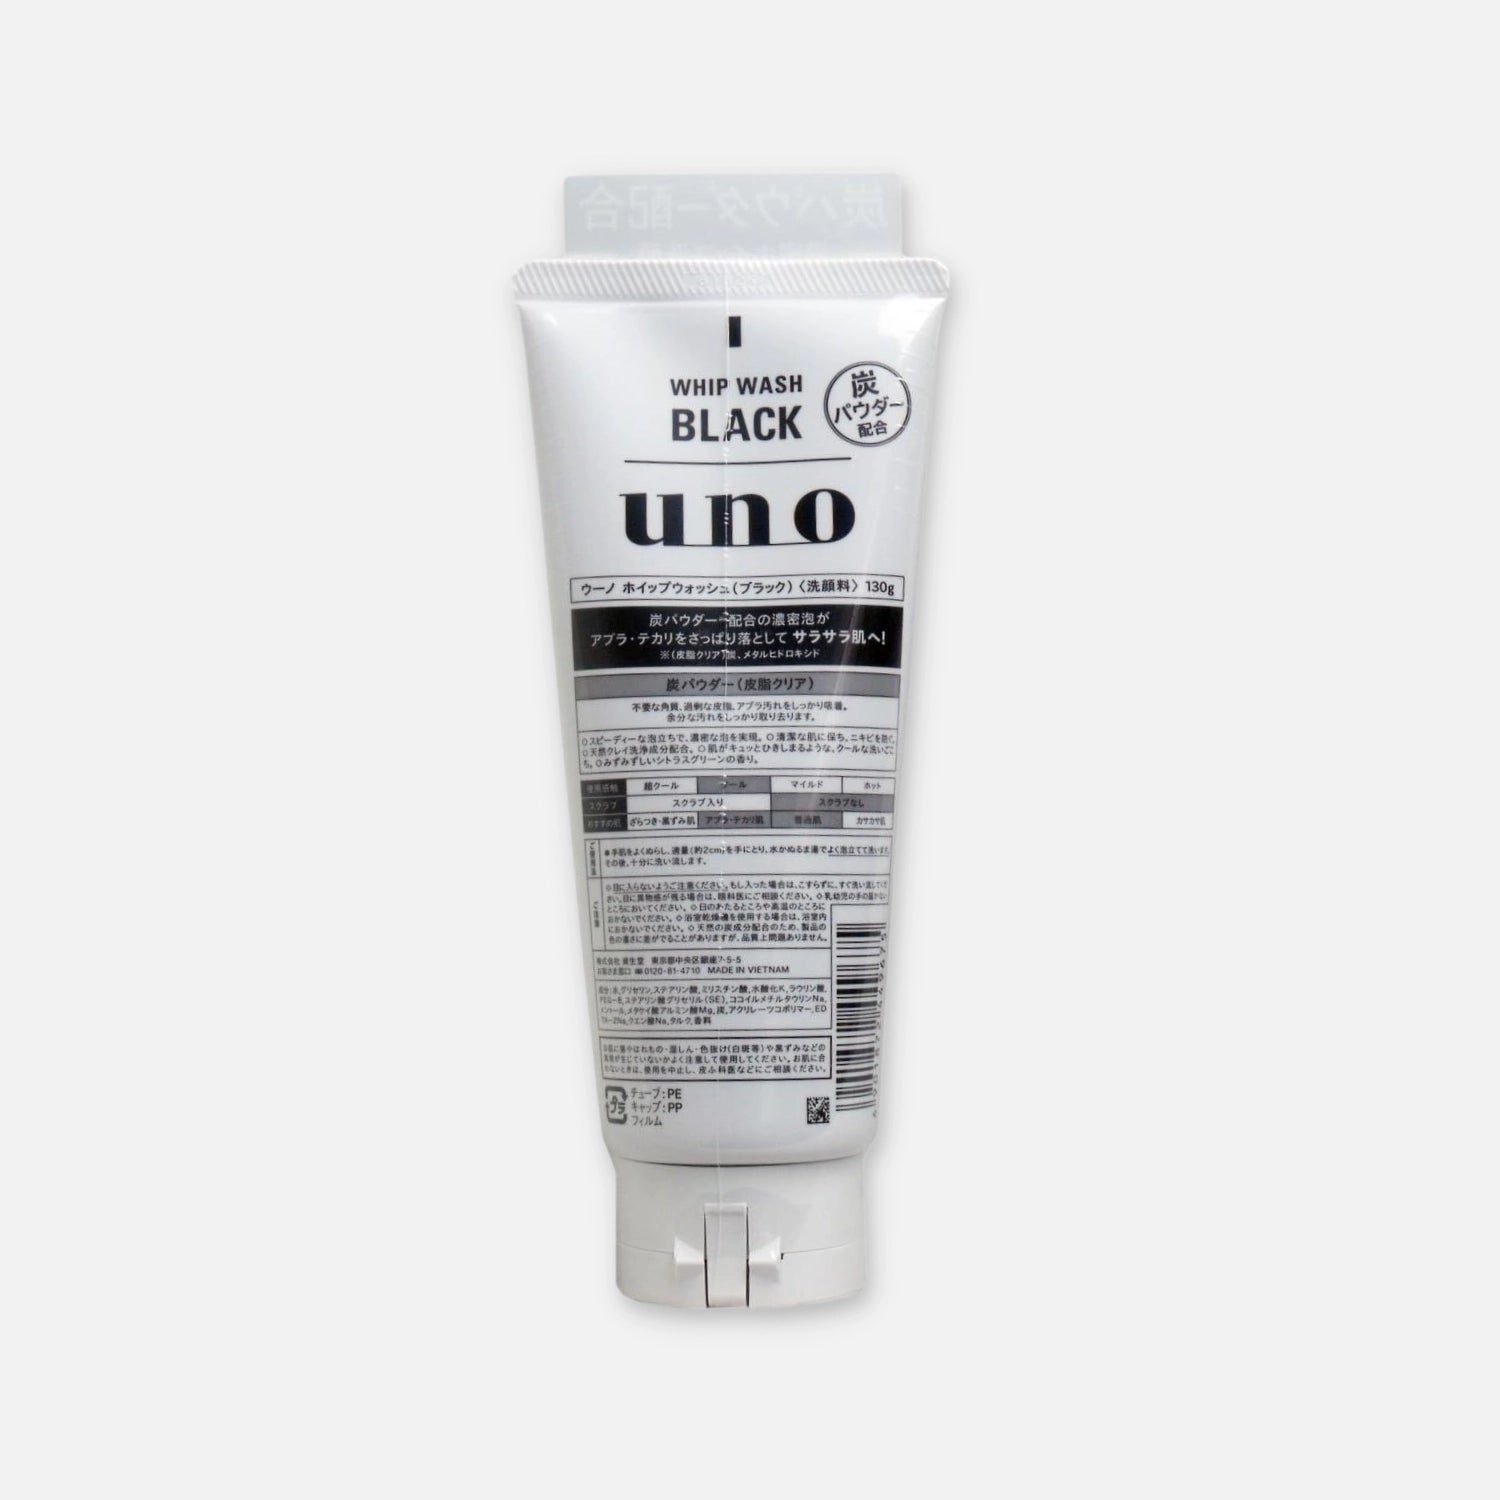 Shiseido Uno for Men Whip Wash Black 130g - Buy Me Japan